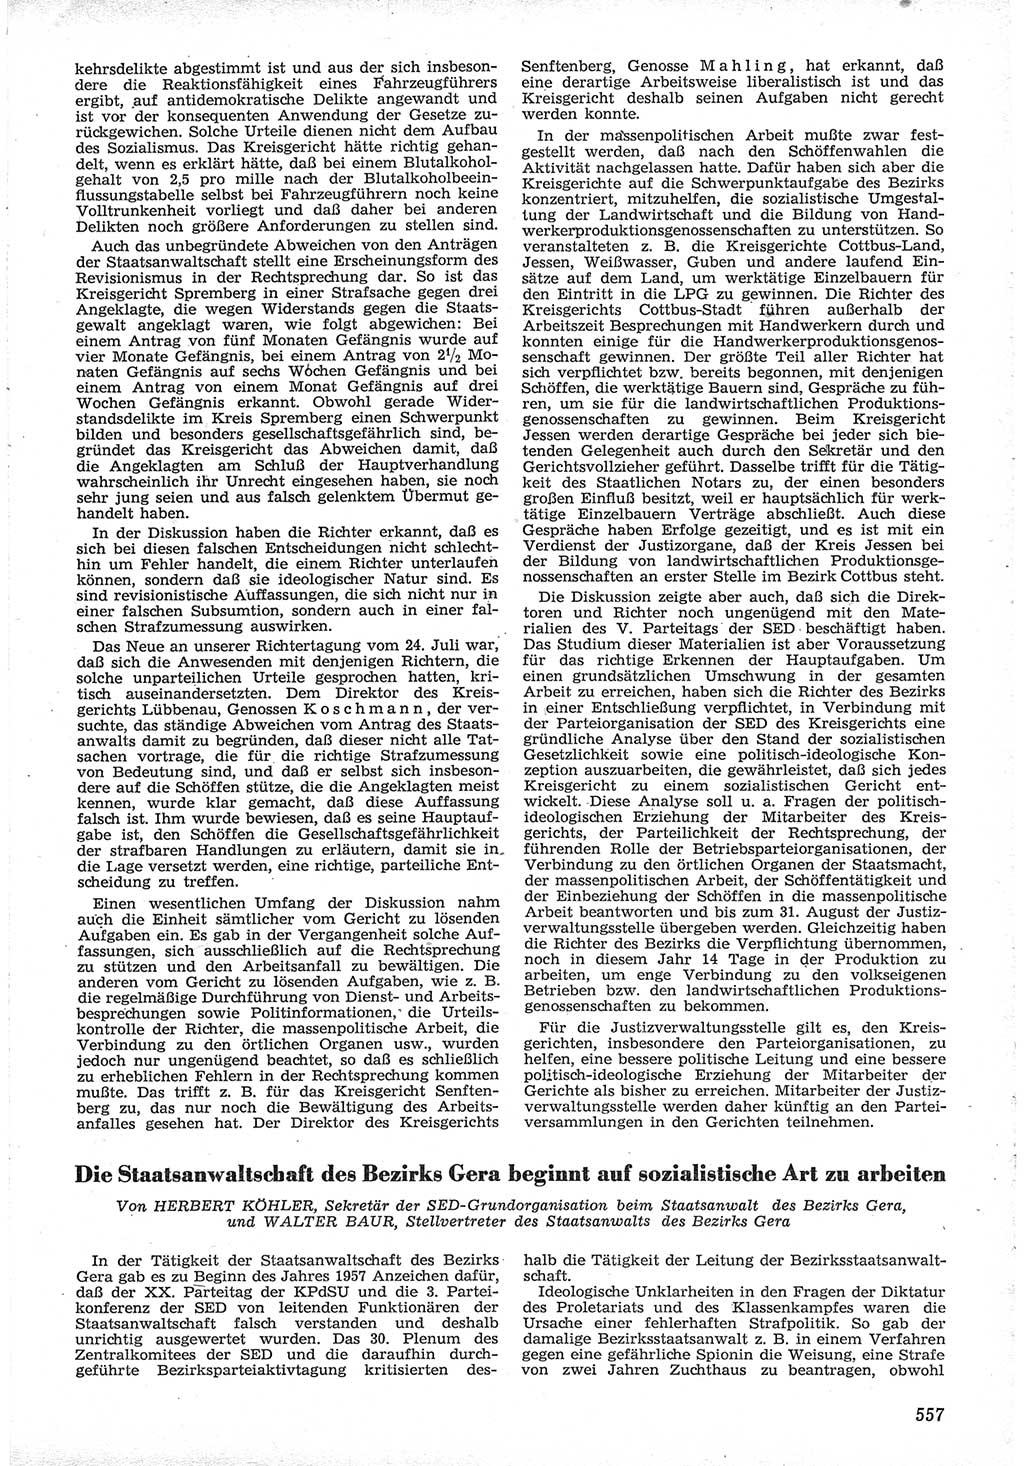 Neue Justiz (NJ), Zeitschrift für Recht und Rechtswissenschaft [Deutsche Demokratische Republik (DDR)], 12. Jahrgang 1958, Seite 557 (NJ DDR 1958, S. 557)